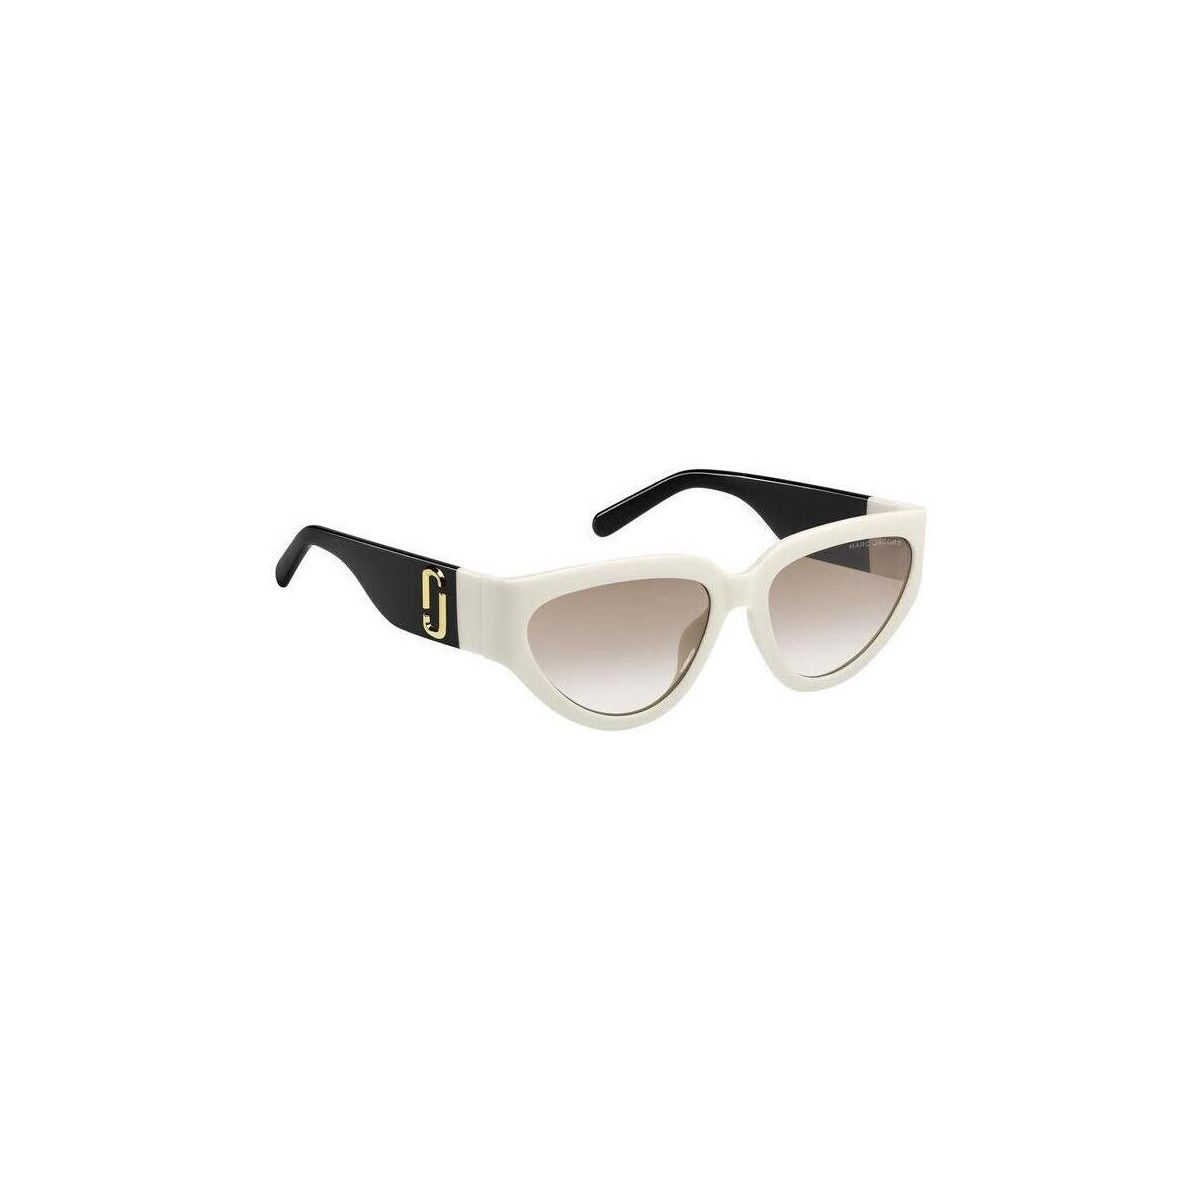 Orologi & Gioielli Donna Occhiali da sole Marc Jacobs MARC 645/S Occhiali da sole, Bianco / Nero/Marrone, 57 mm Altri